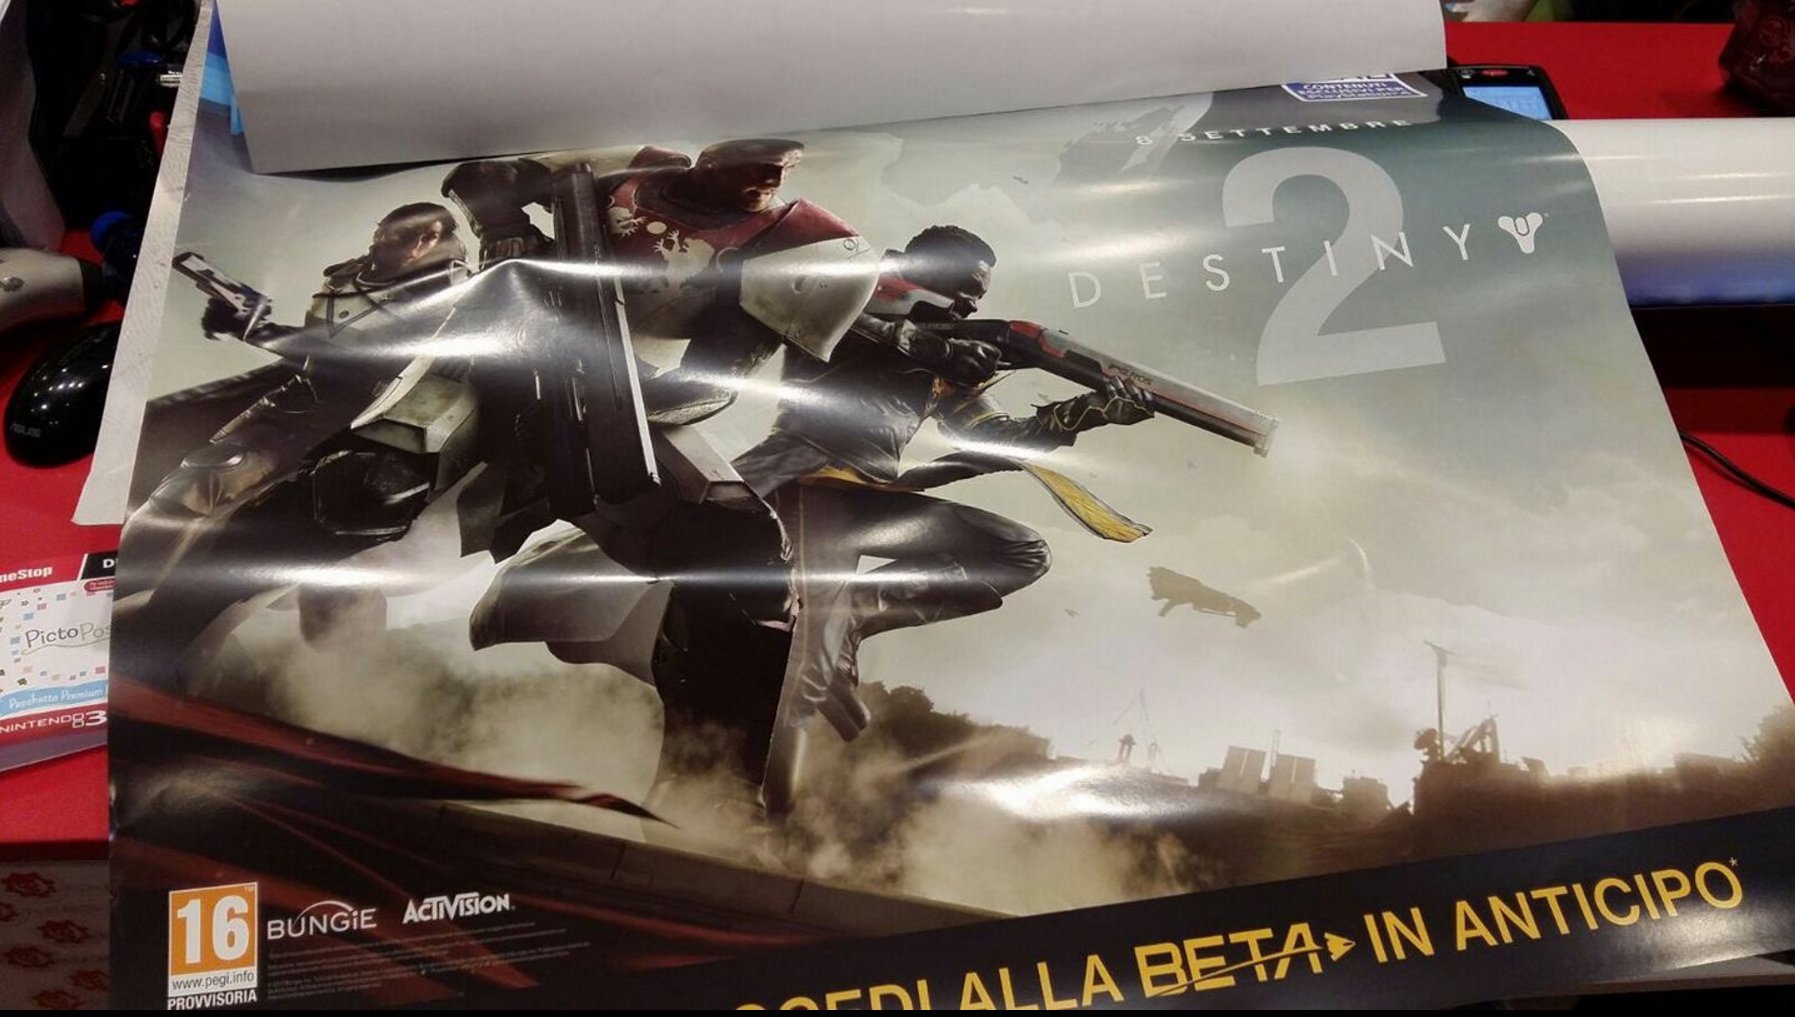 Immagine pubblicata in relazione al seguente contenuto: La locandina leaked del game Destiny 2 svela la data di lancio del titolo | Nome immagine: news26052_Destiny-2-Poster-Leak_1.jpg